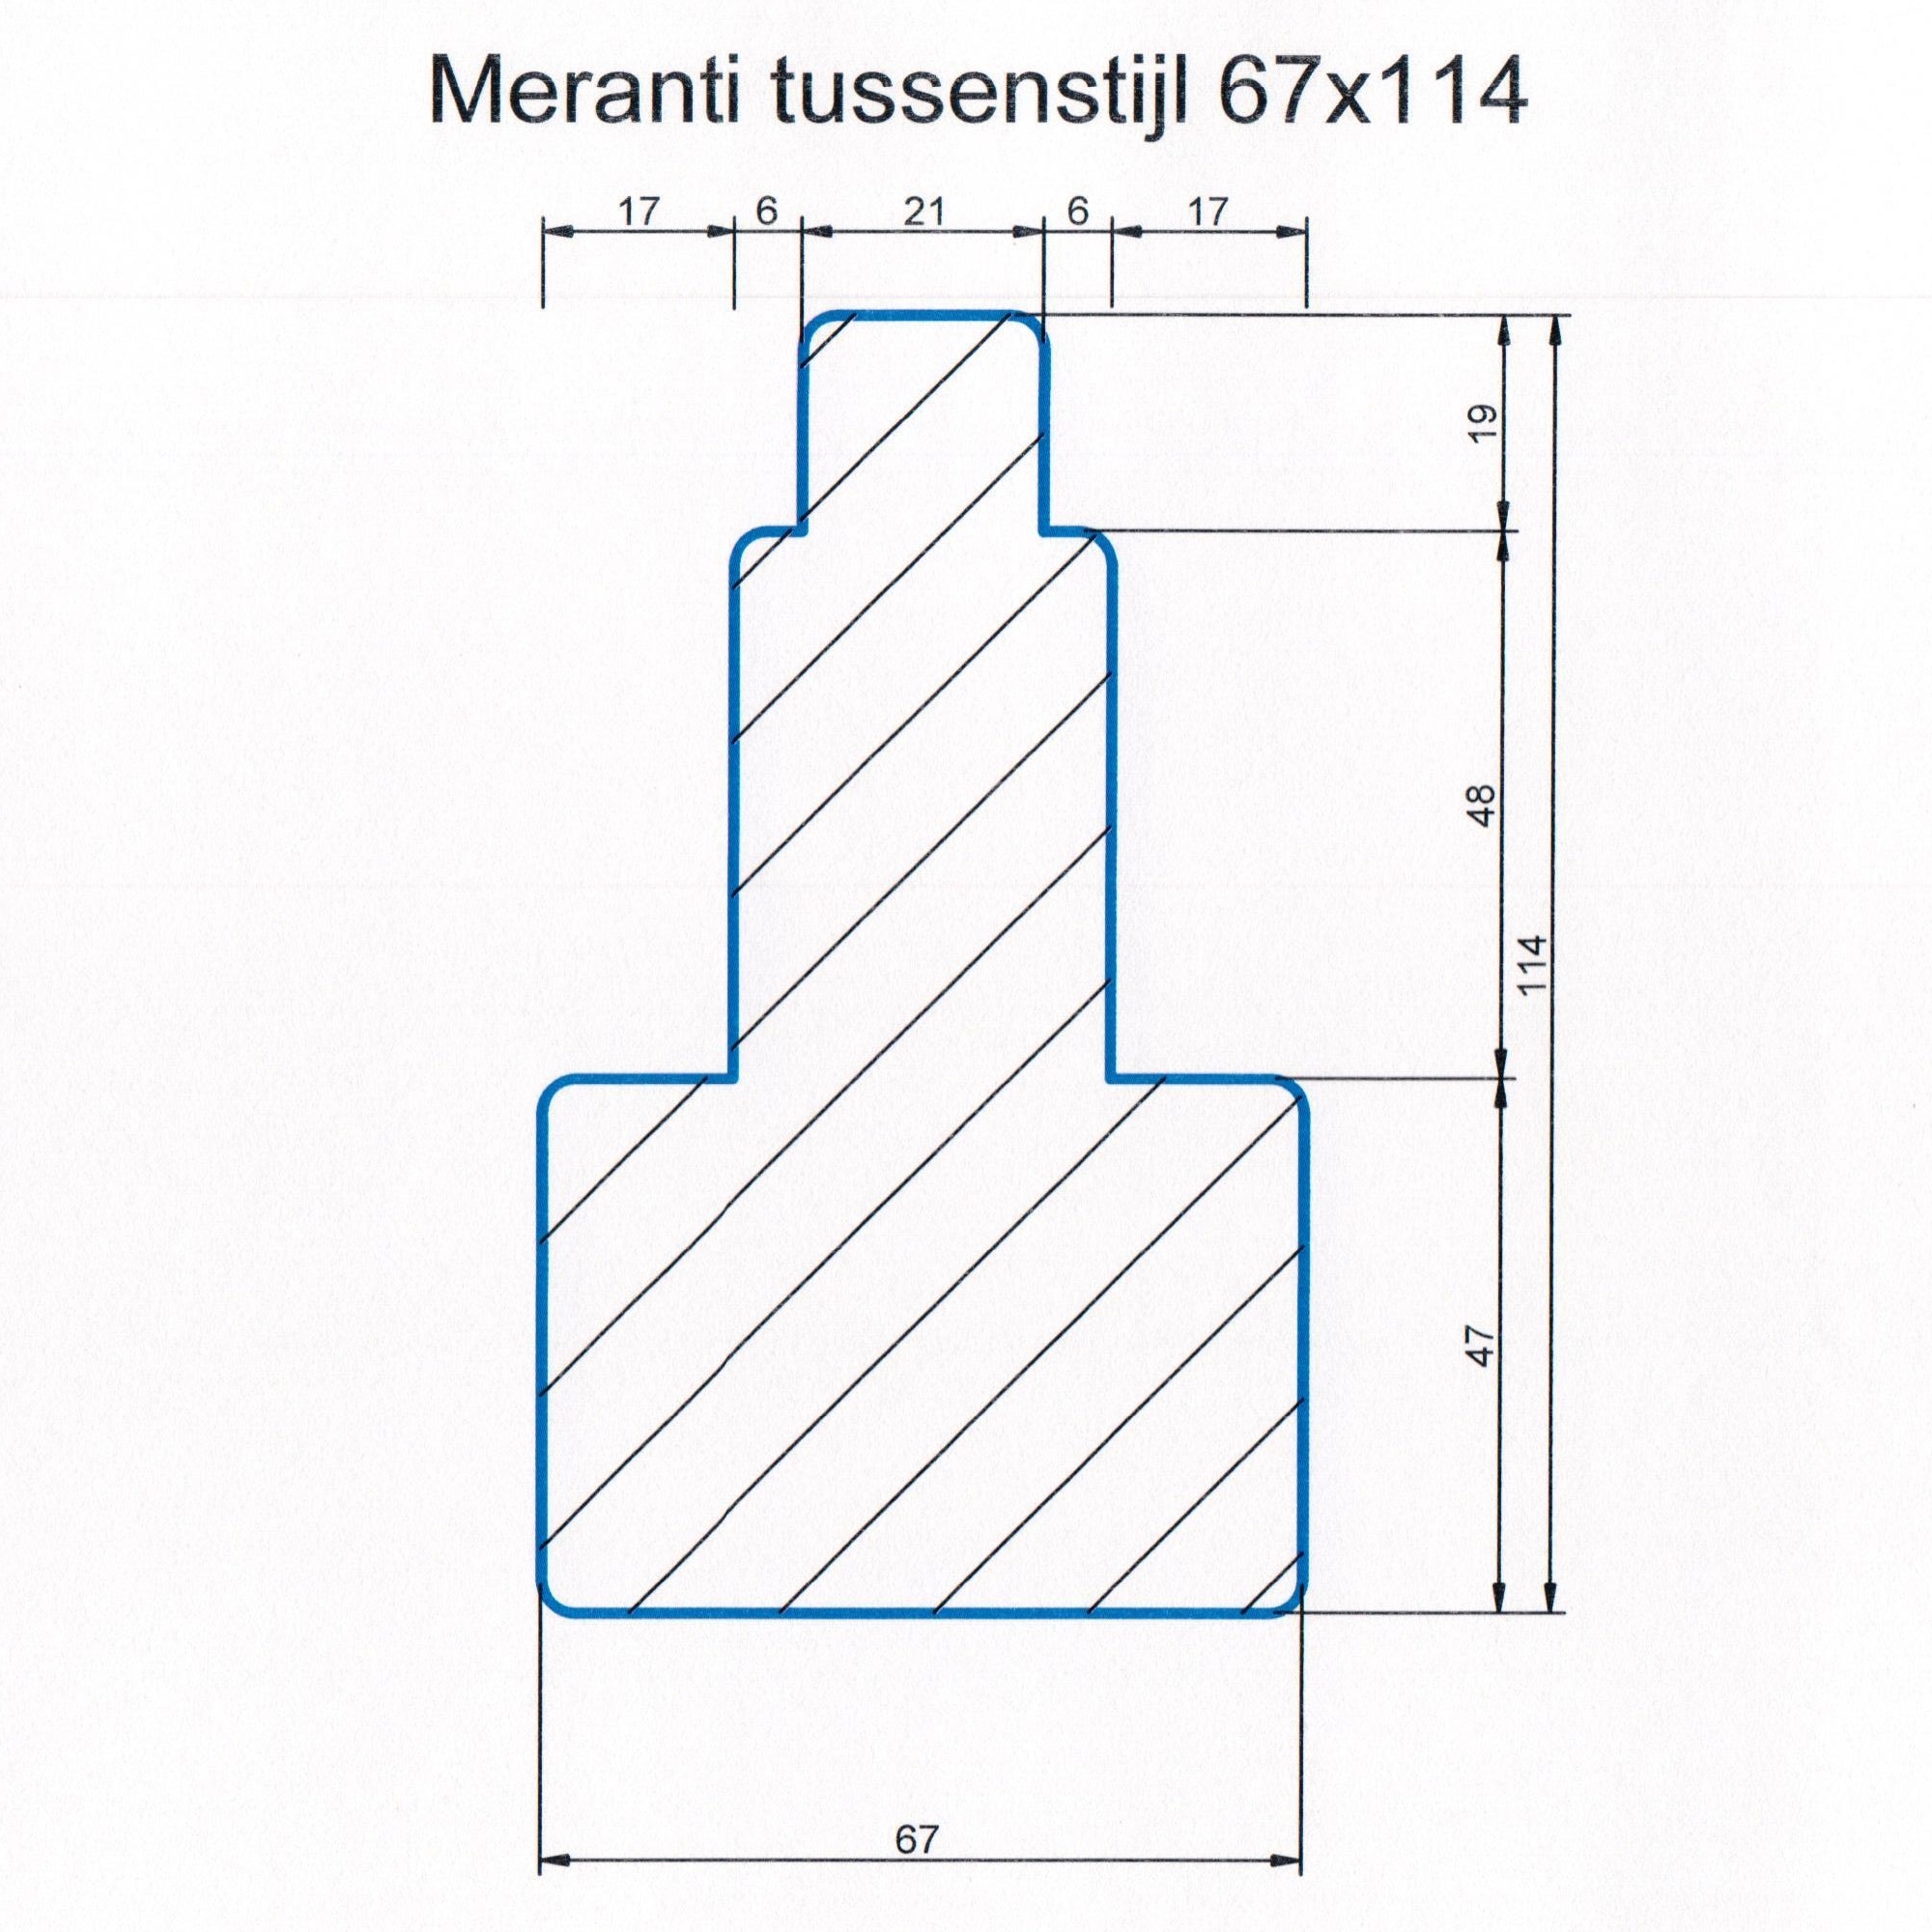 Meranti 67x114 kozijnhout Tussenstijl L=2450 mm